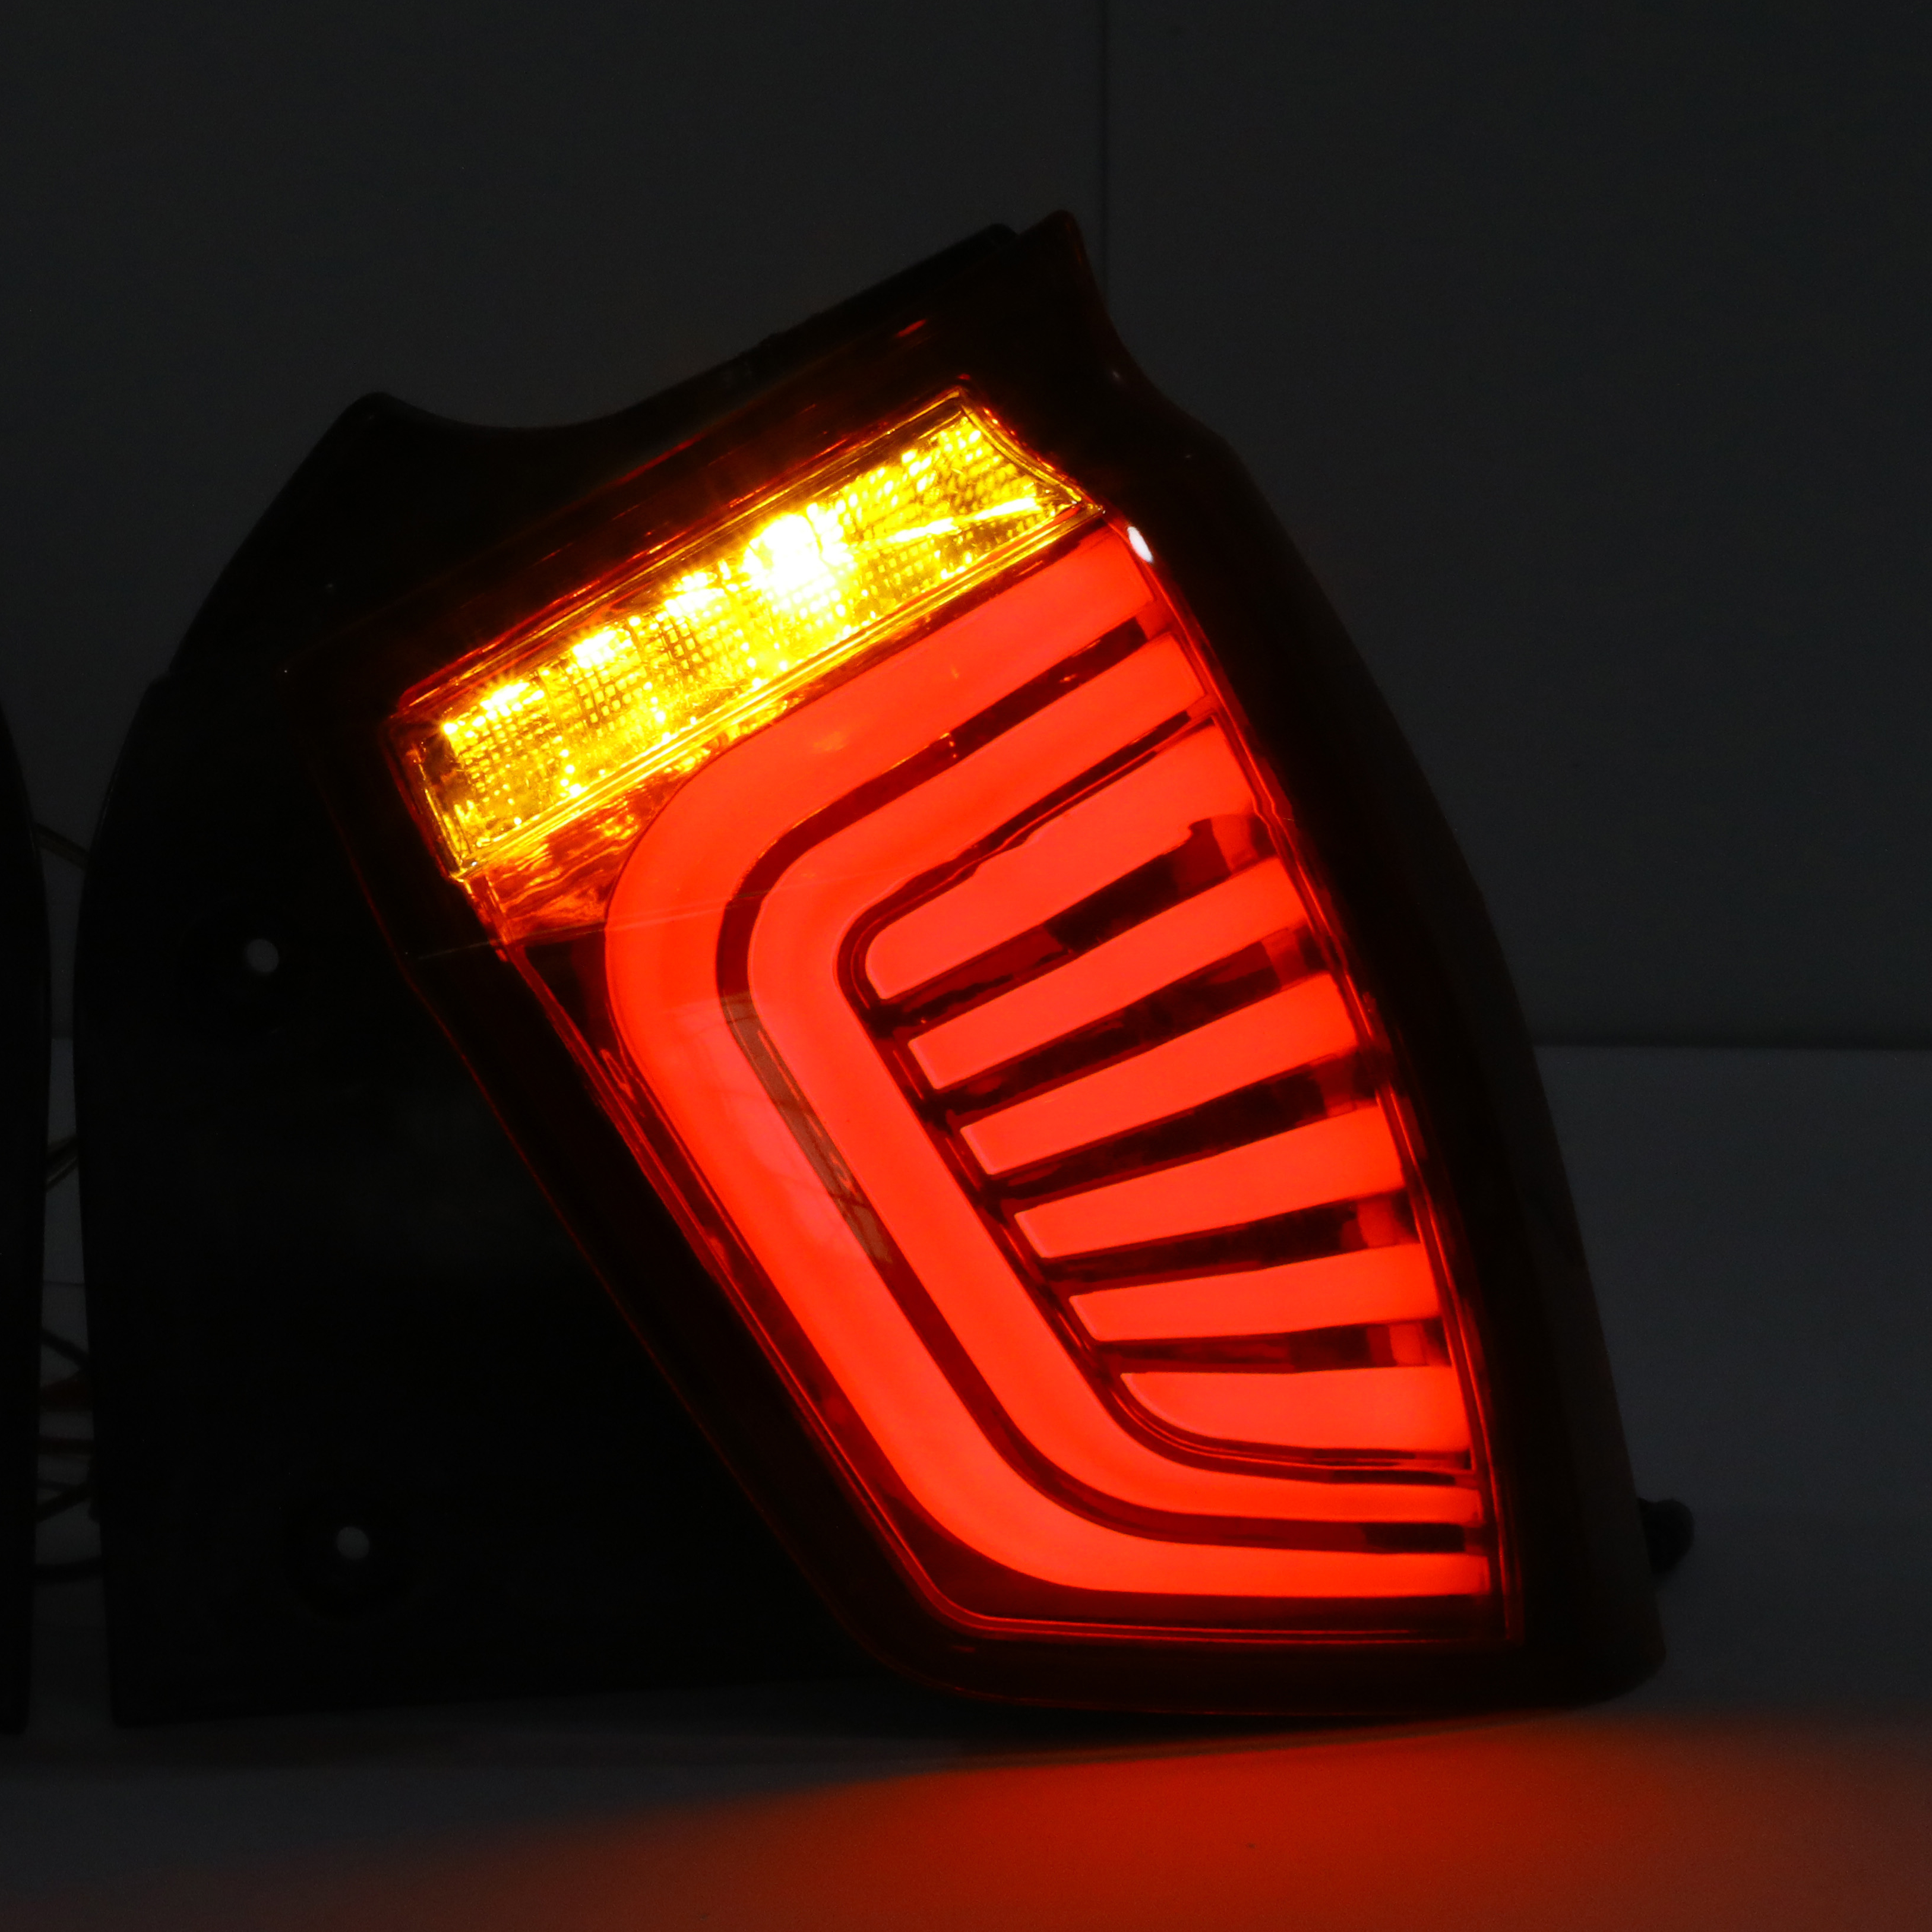 Original Tail Lamp for H/Y/U/N/D/AI SANTRO wtih factory price